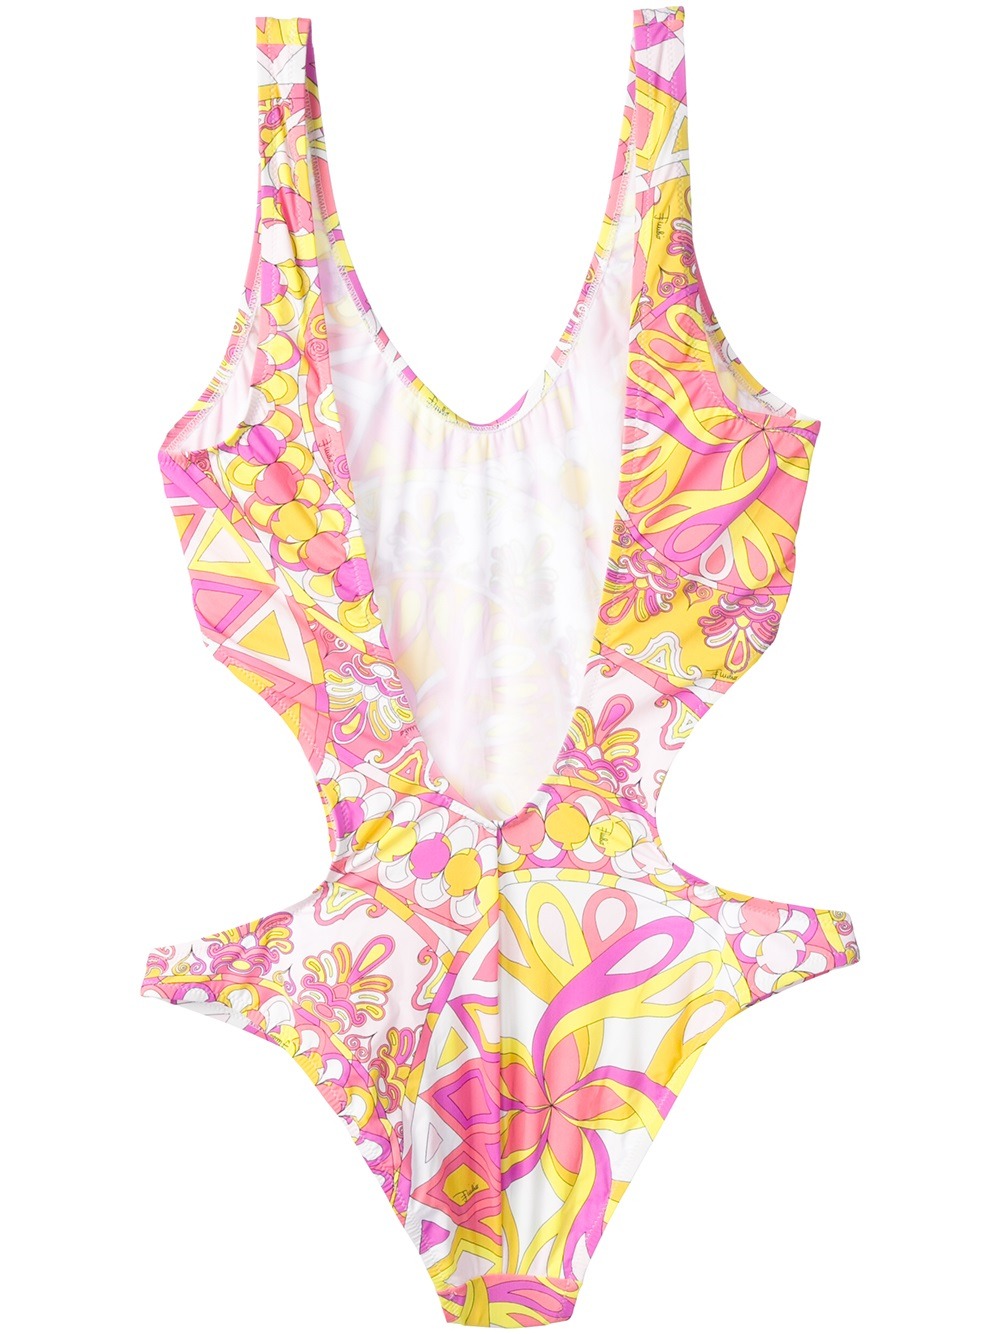 Lyst - Emilio Pucci Graphic Print Swimsuit